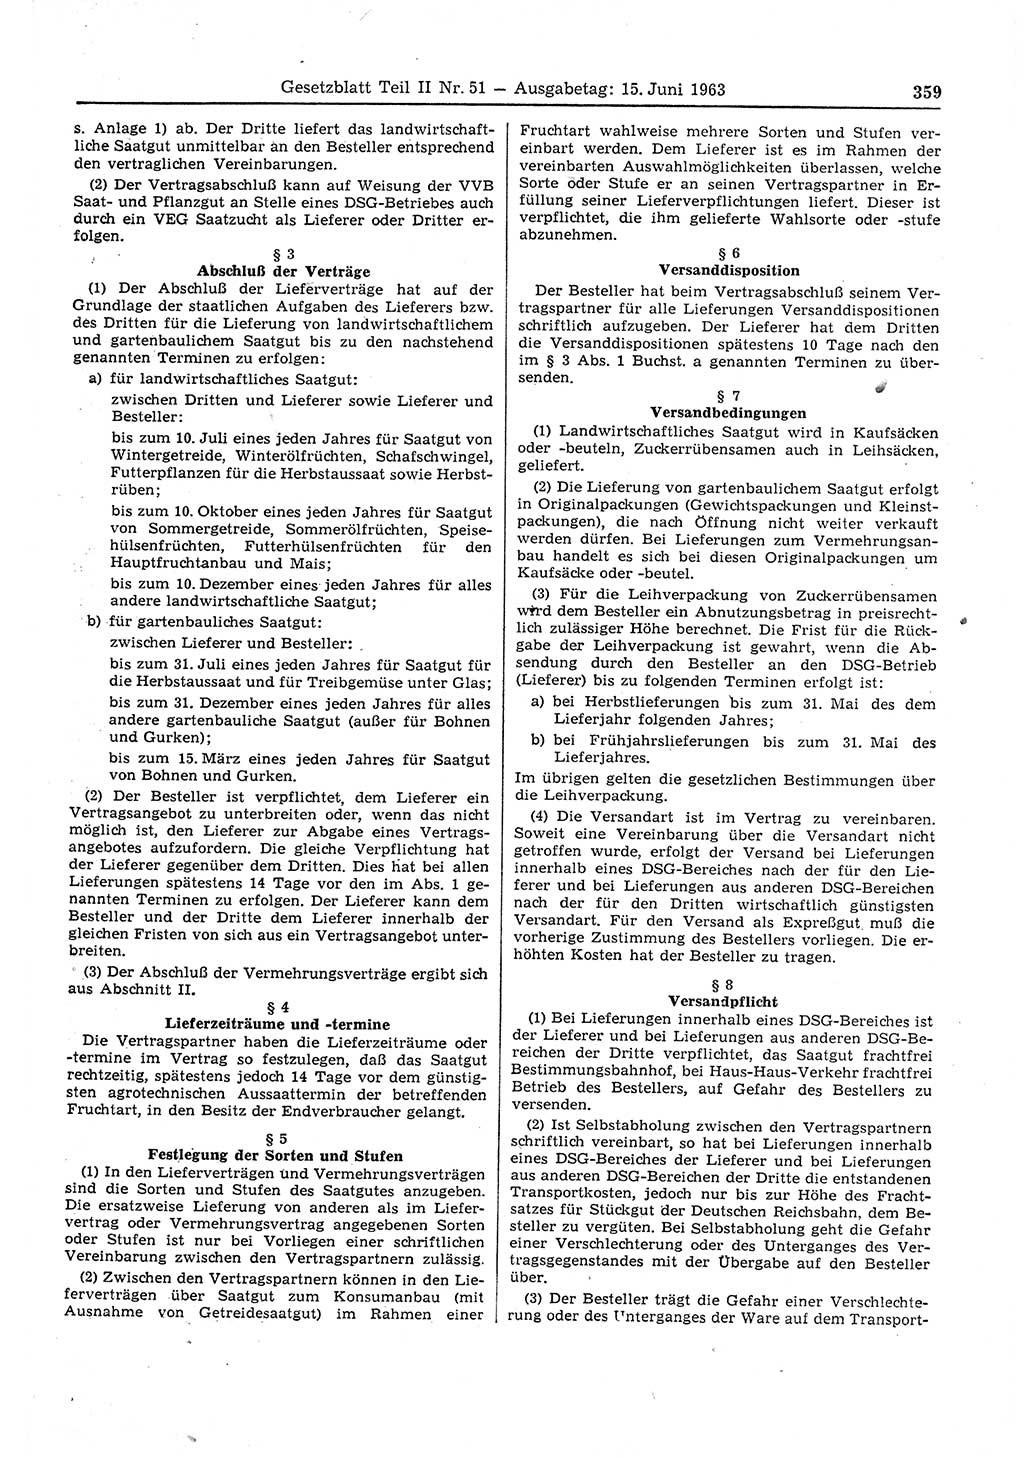 Gesetzblatt (GBl.) der Deutschen Demokratischen Republik (DDR) Teil ⅠⅠ 1963, Seite 359 (GBl. DDR ⅠⅠ 1963, S. 359)